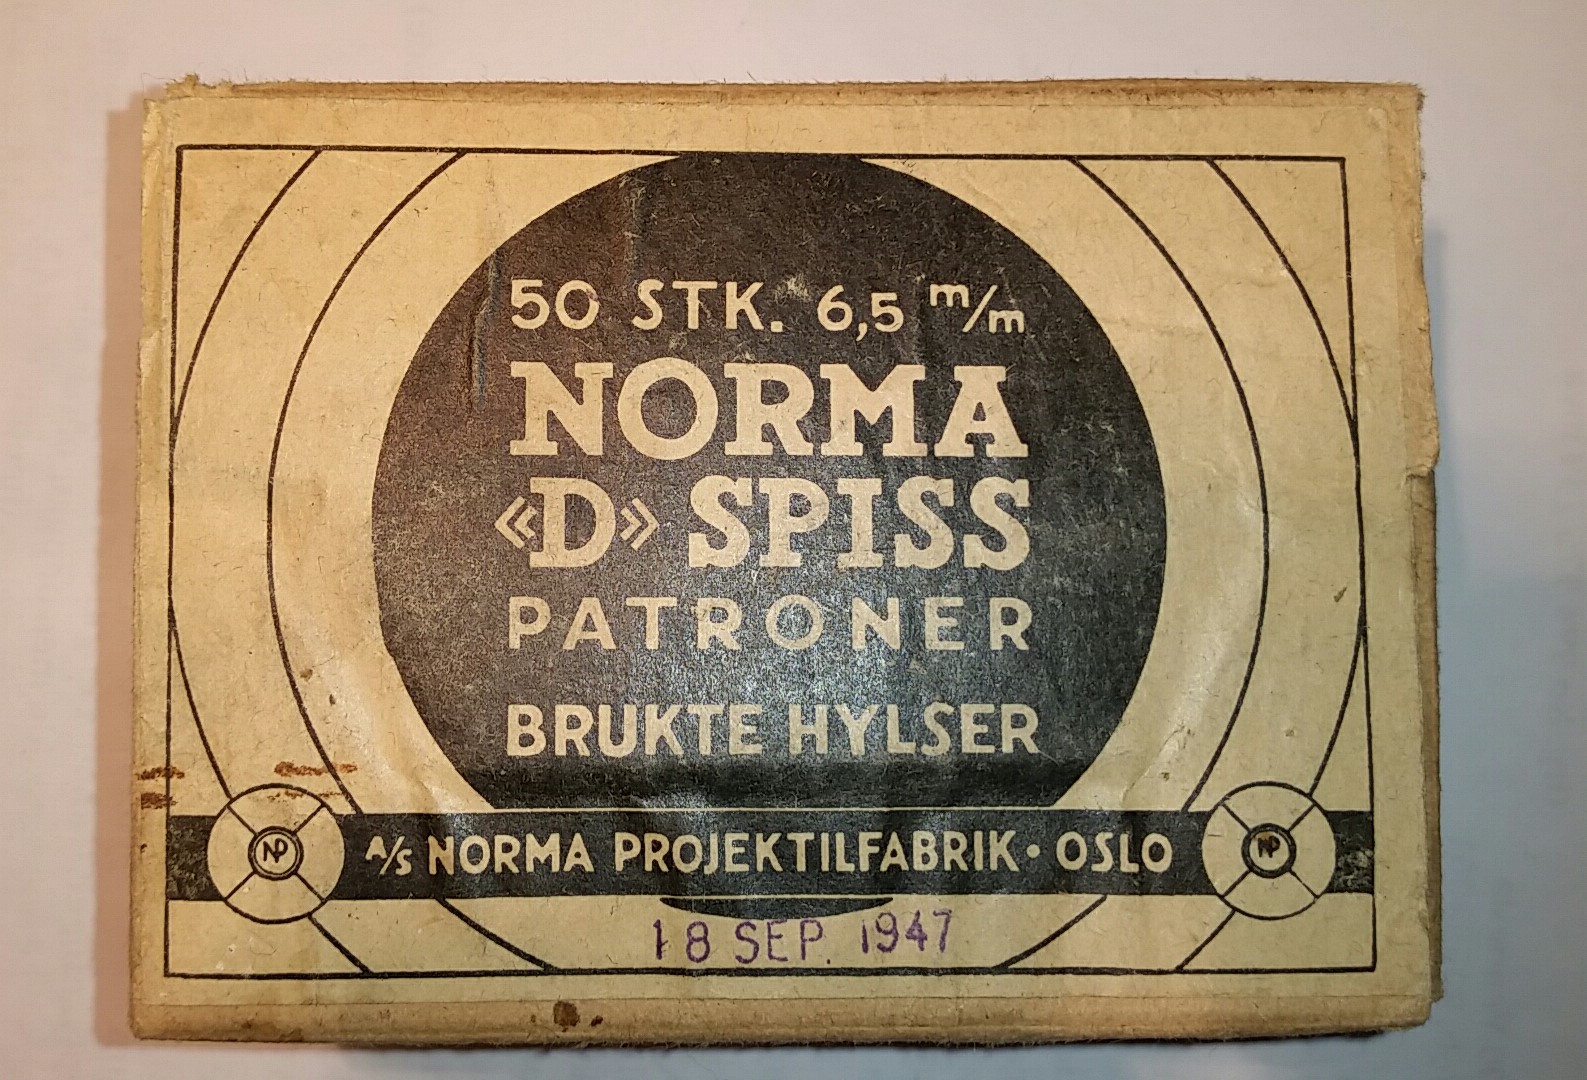 ./ammo/65x55/esker/Eske-65x55-Norma-50skudd-Helmantel-brukte-hylser-1947-1.jpg